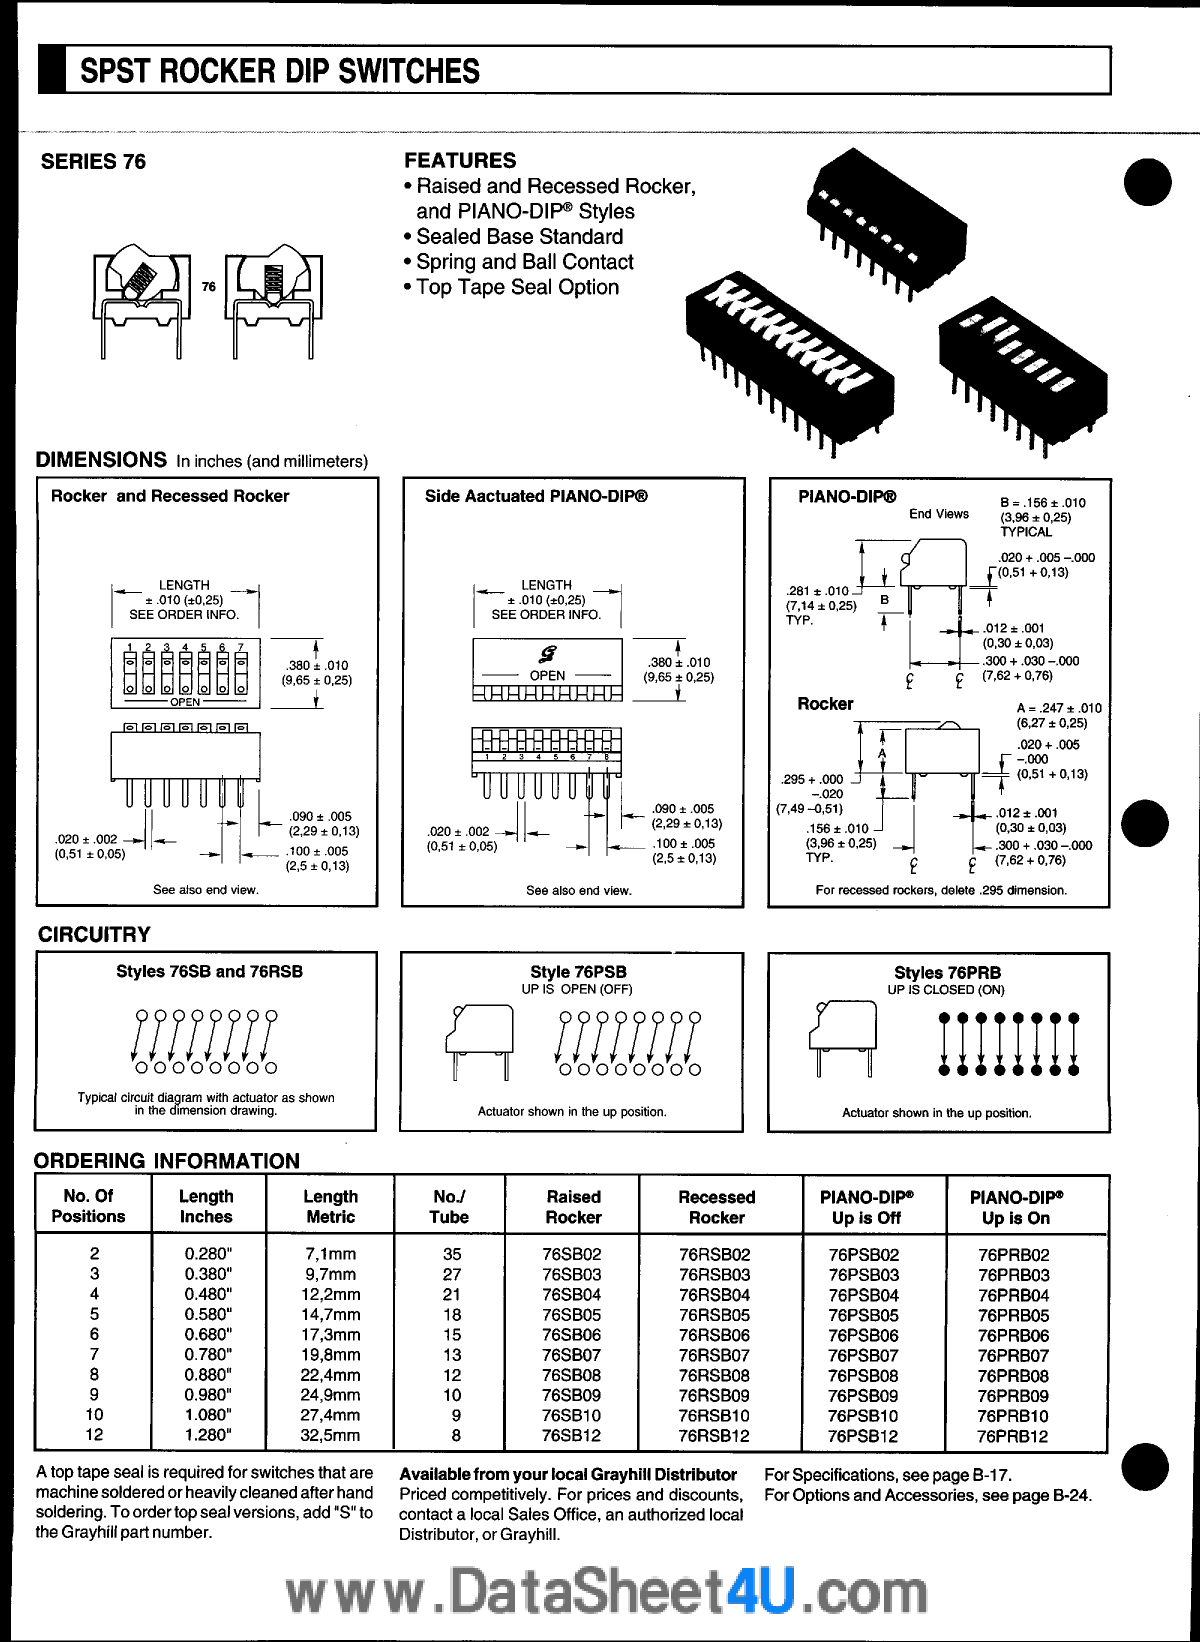 76PRB09 datasheet, circuit